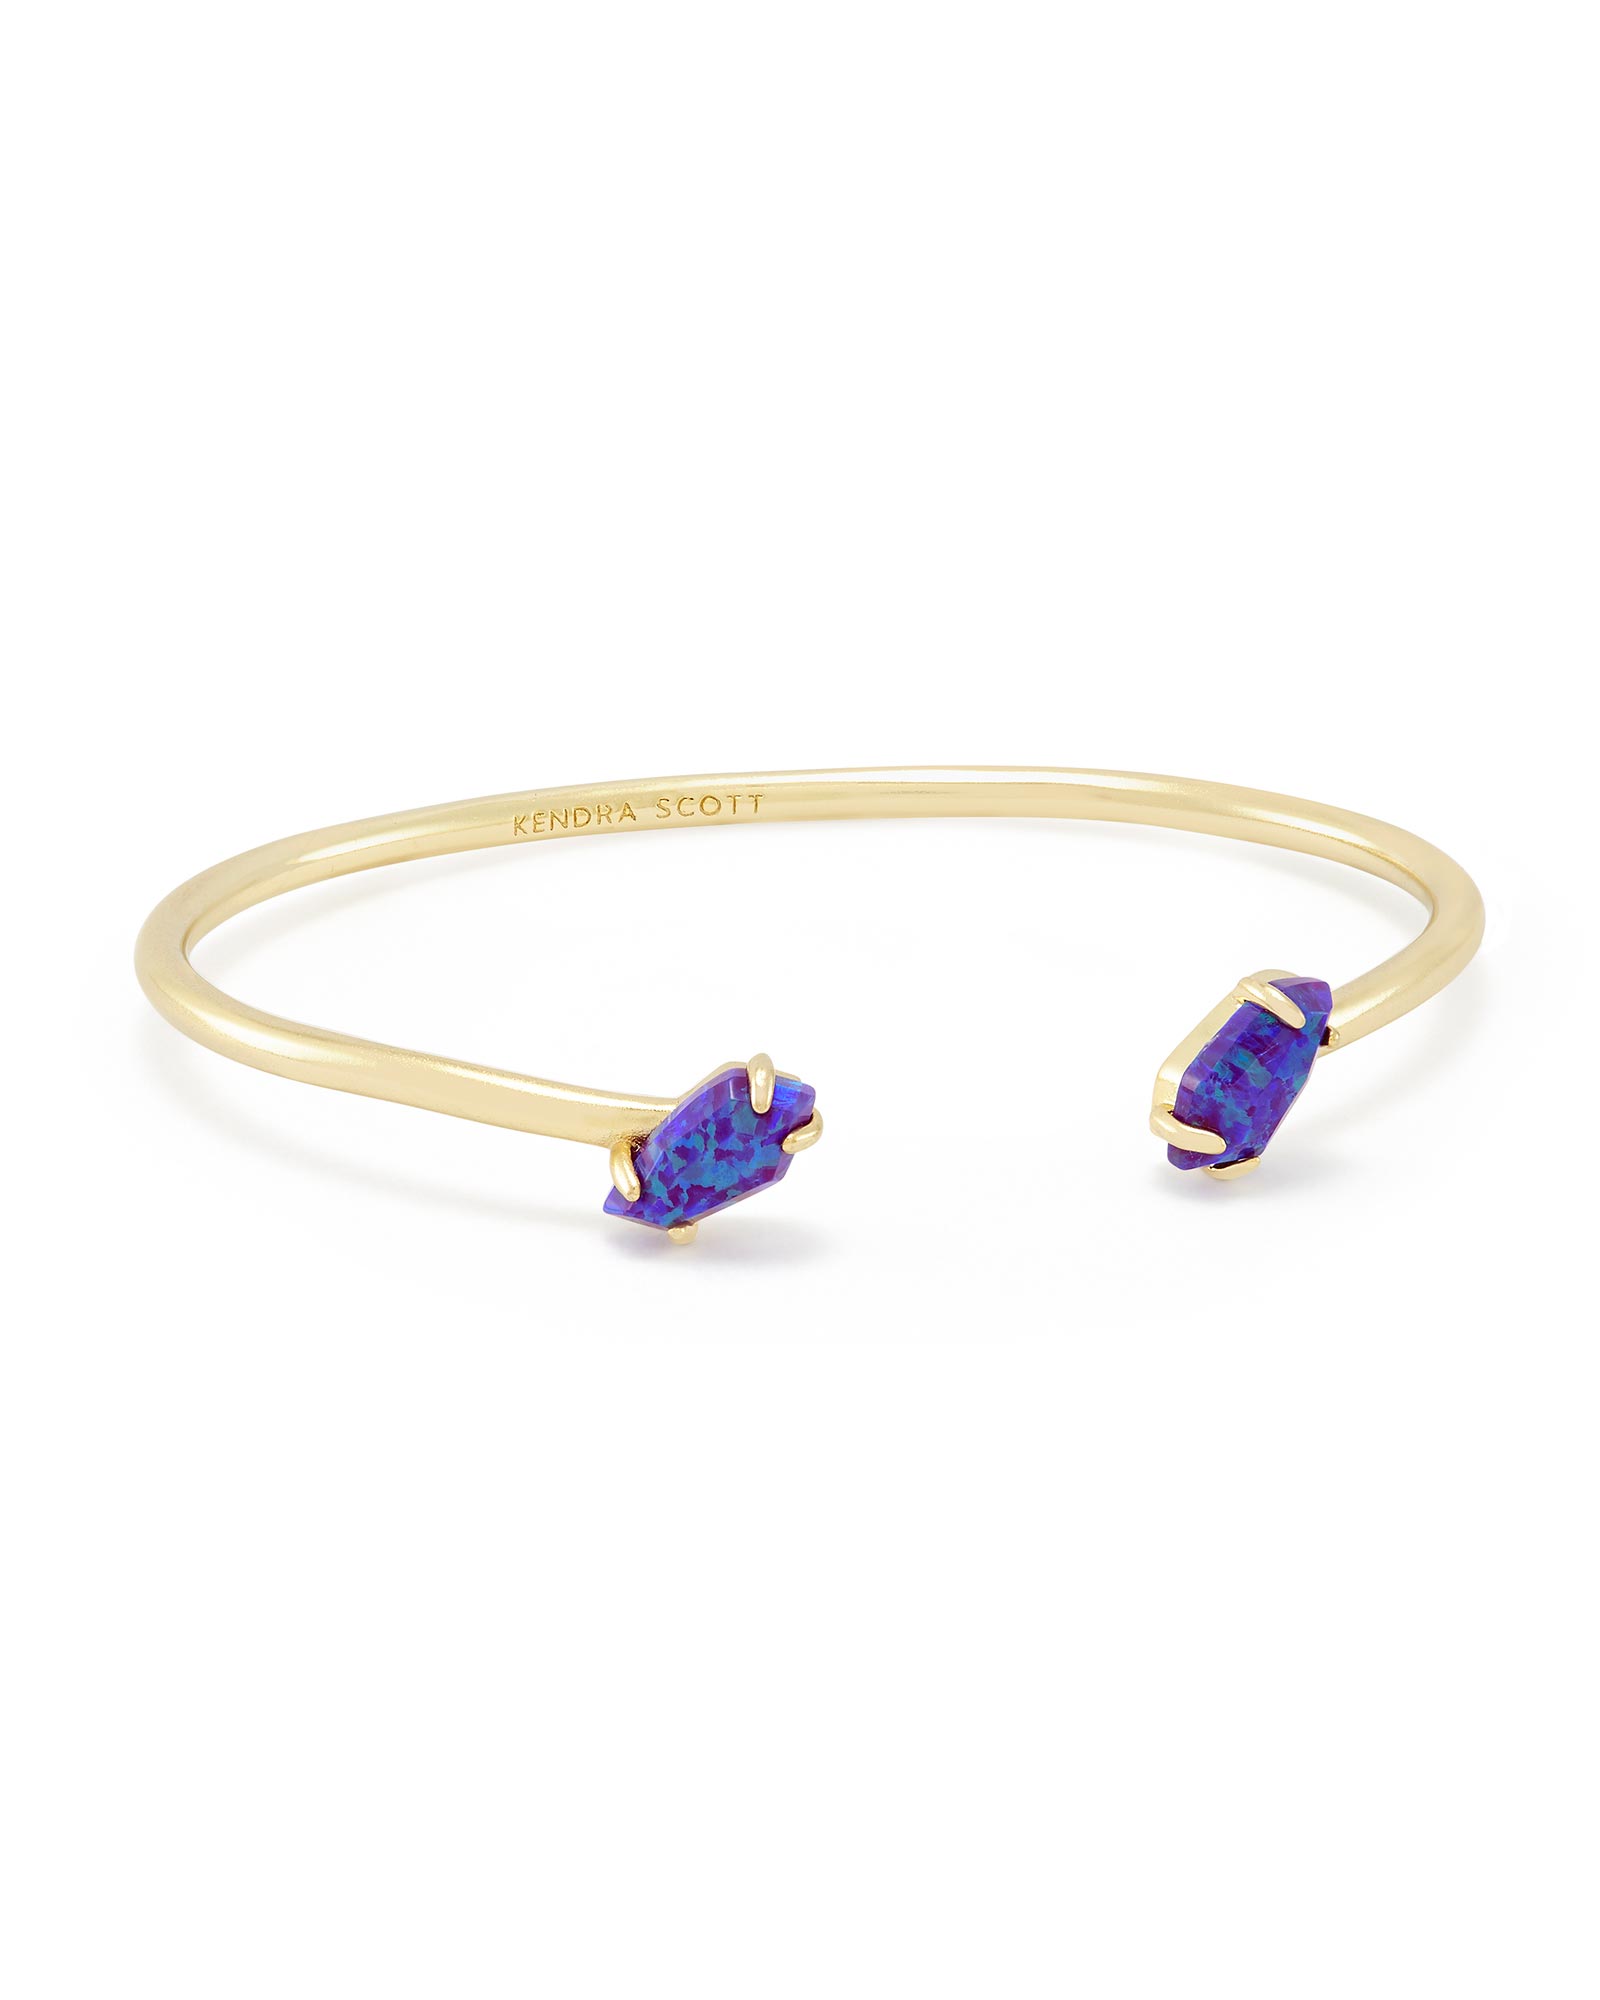 Jackson Gold Pinch Bracelet in Marine Opal | Kendra Scott